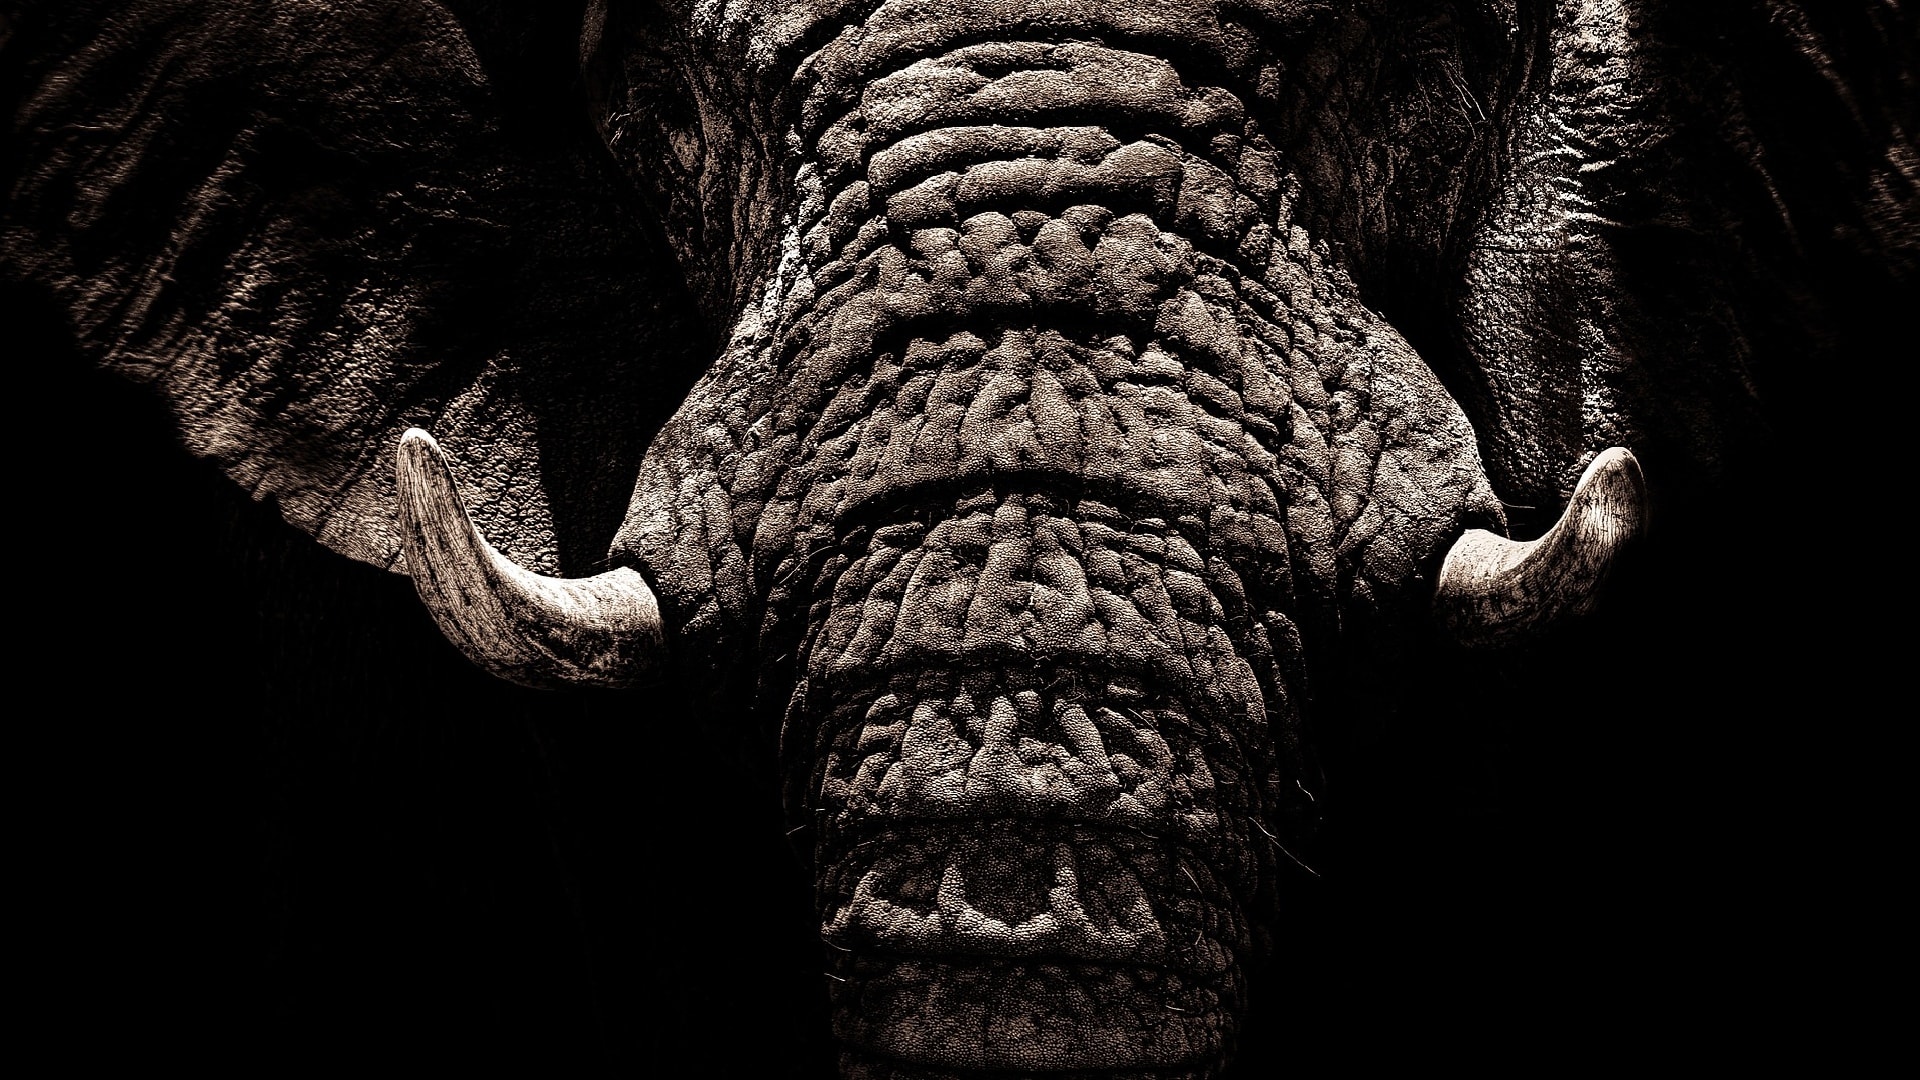 Je slonovina drahá nebo bezcenná?